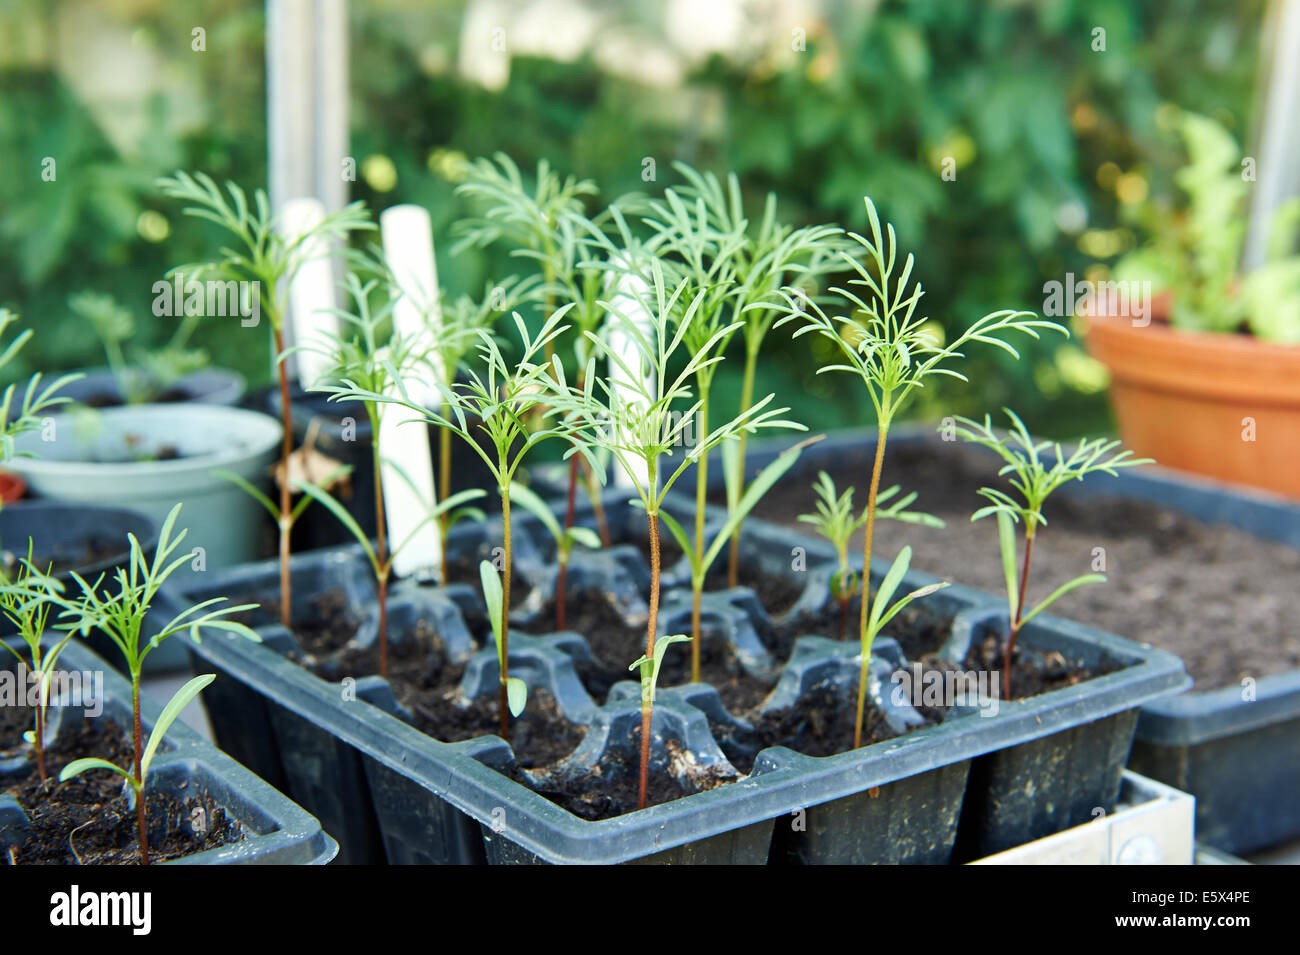 Young-Kosmos Pflanzen im Anzuchtkasten wächst in einem Gewächshaus  Stockfotografie - Alamy